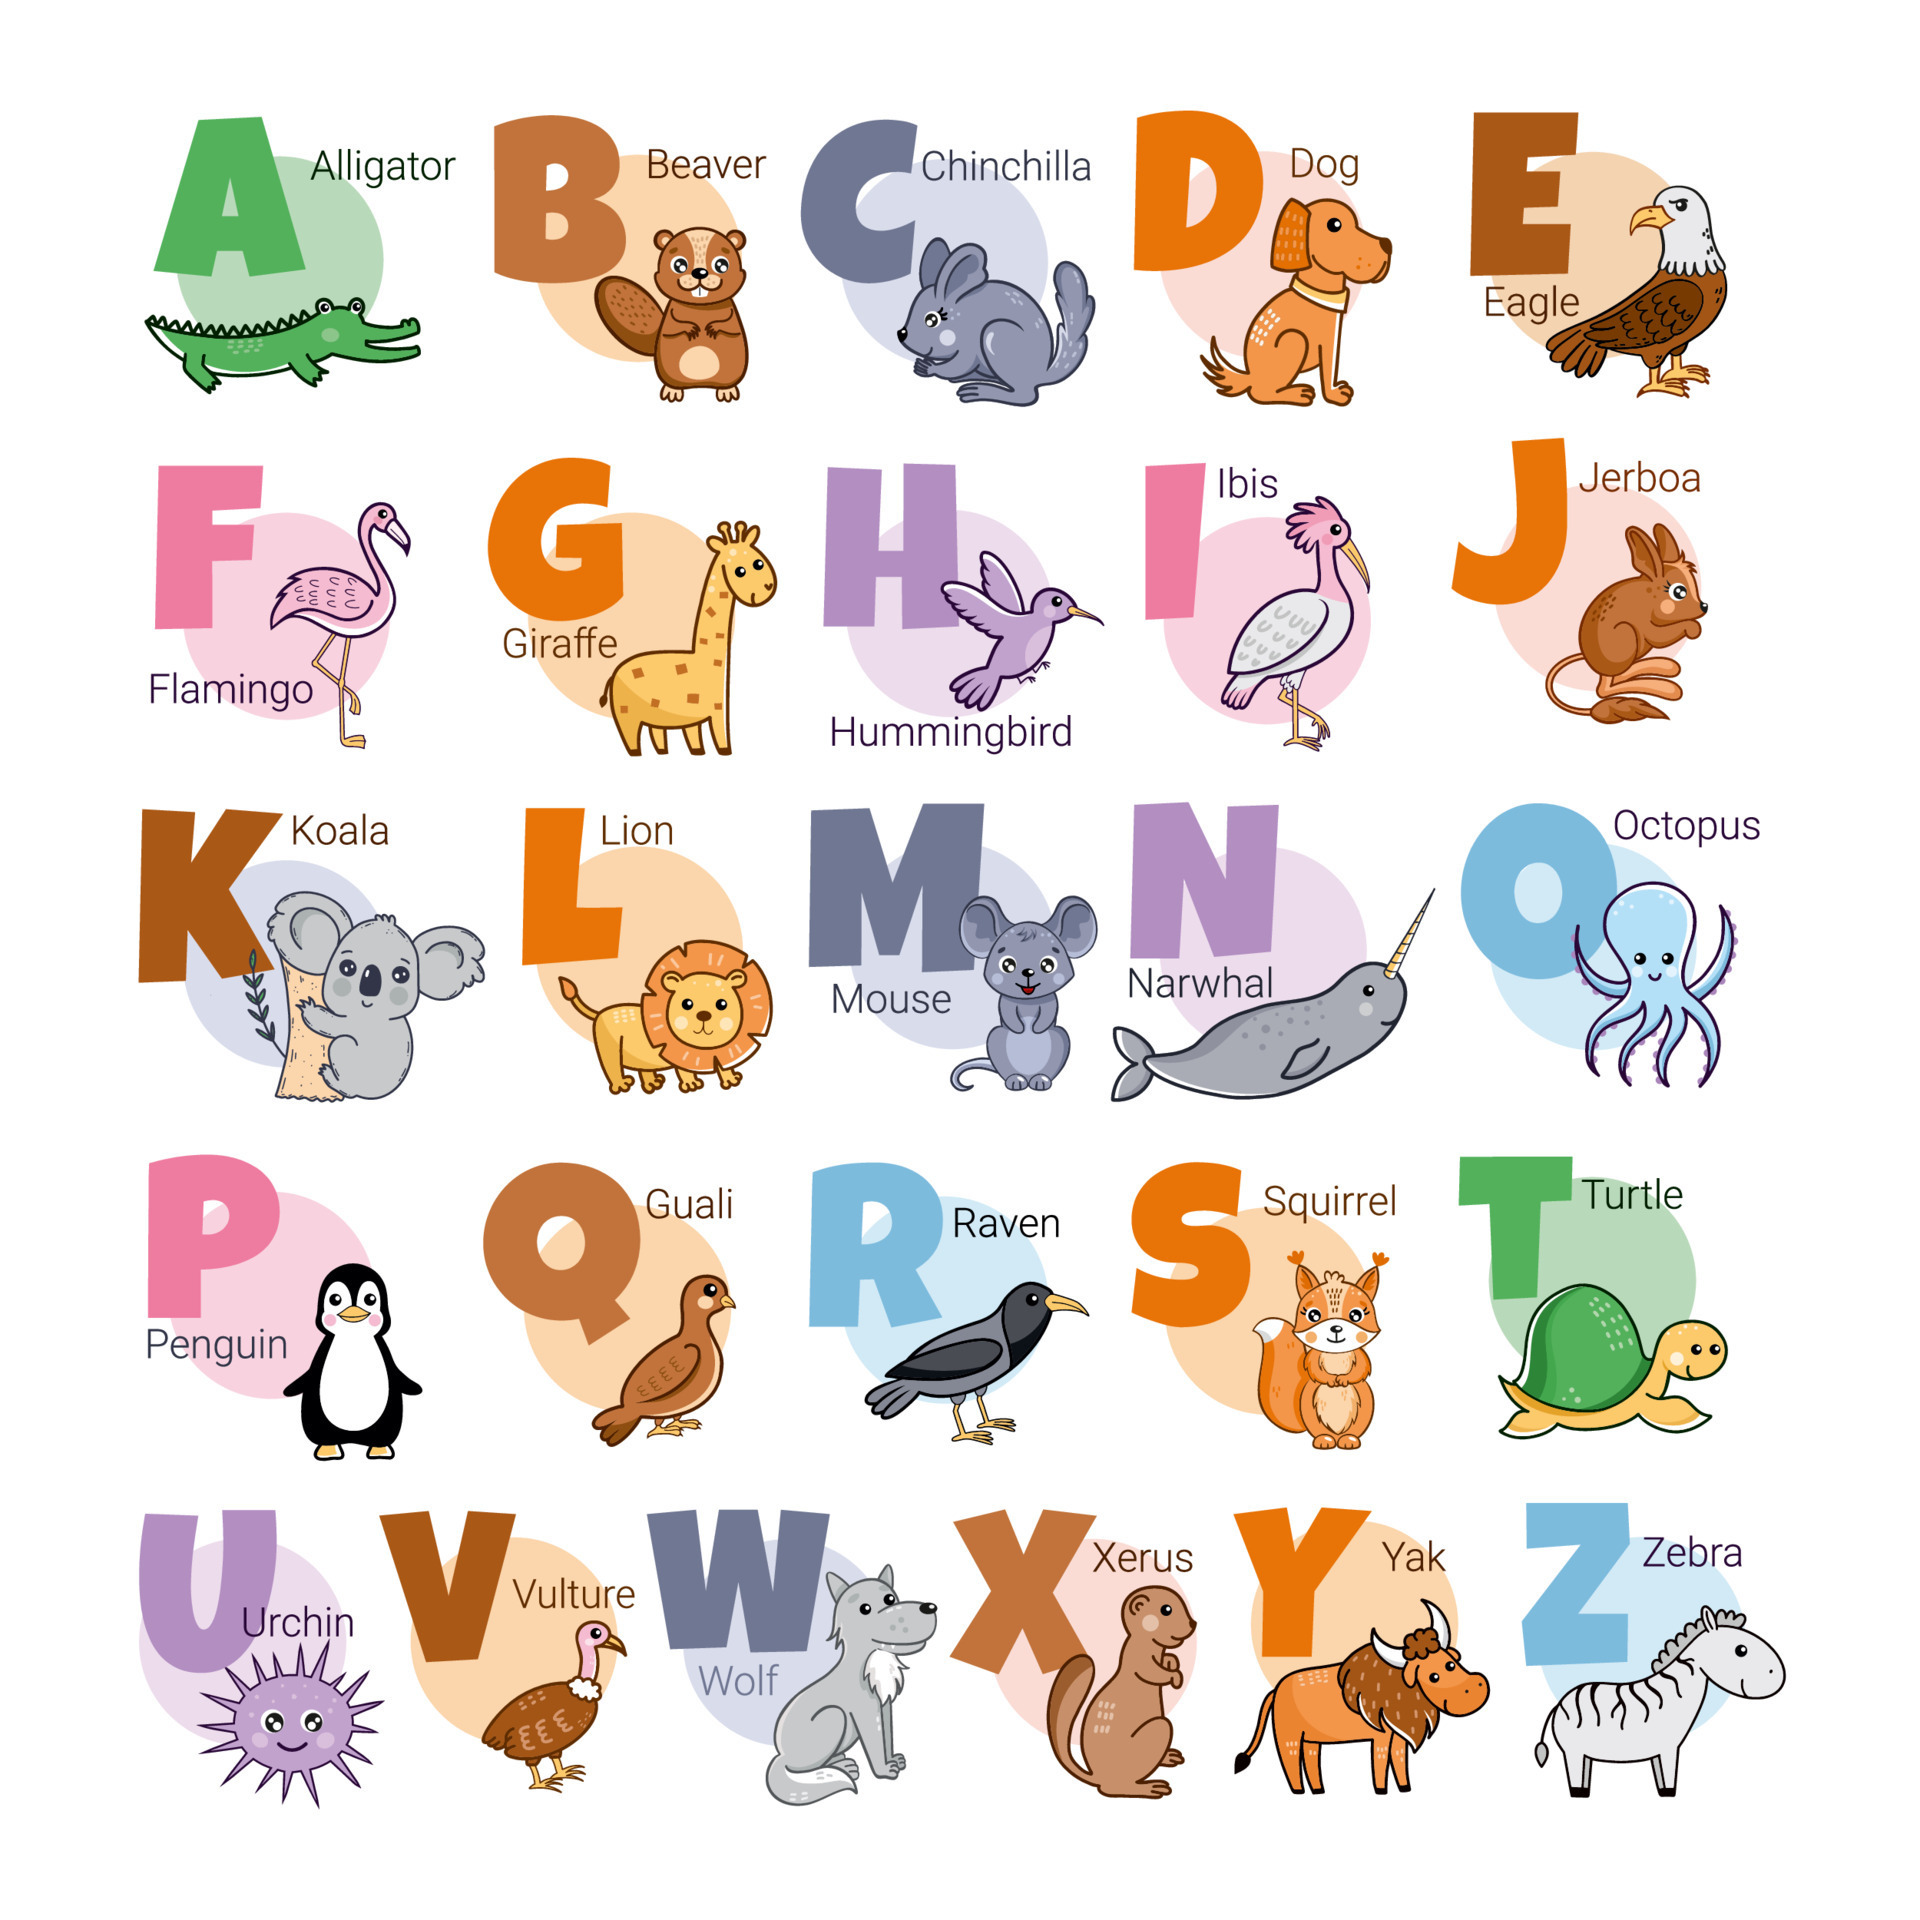 Anglais alphabet avec animaux pour les enfants. affiche pour les enfants  chambre. 22660464 Art vectoriel chez Vecteezy